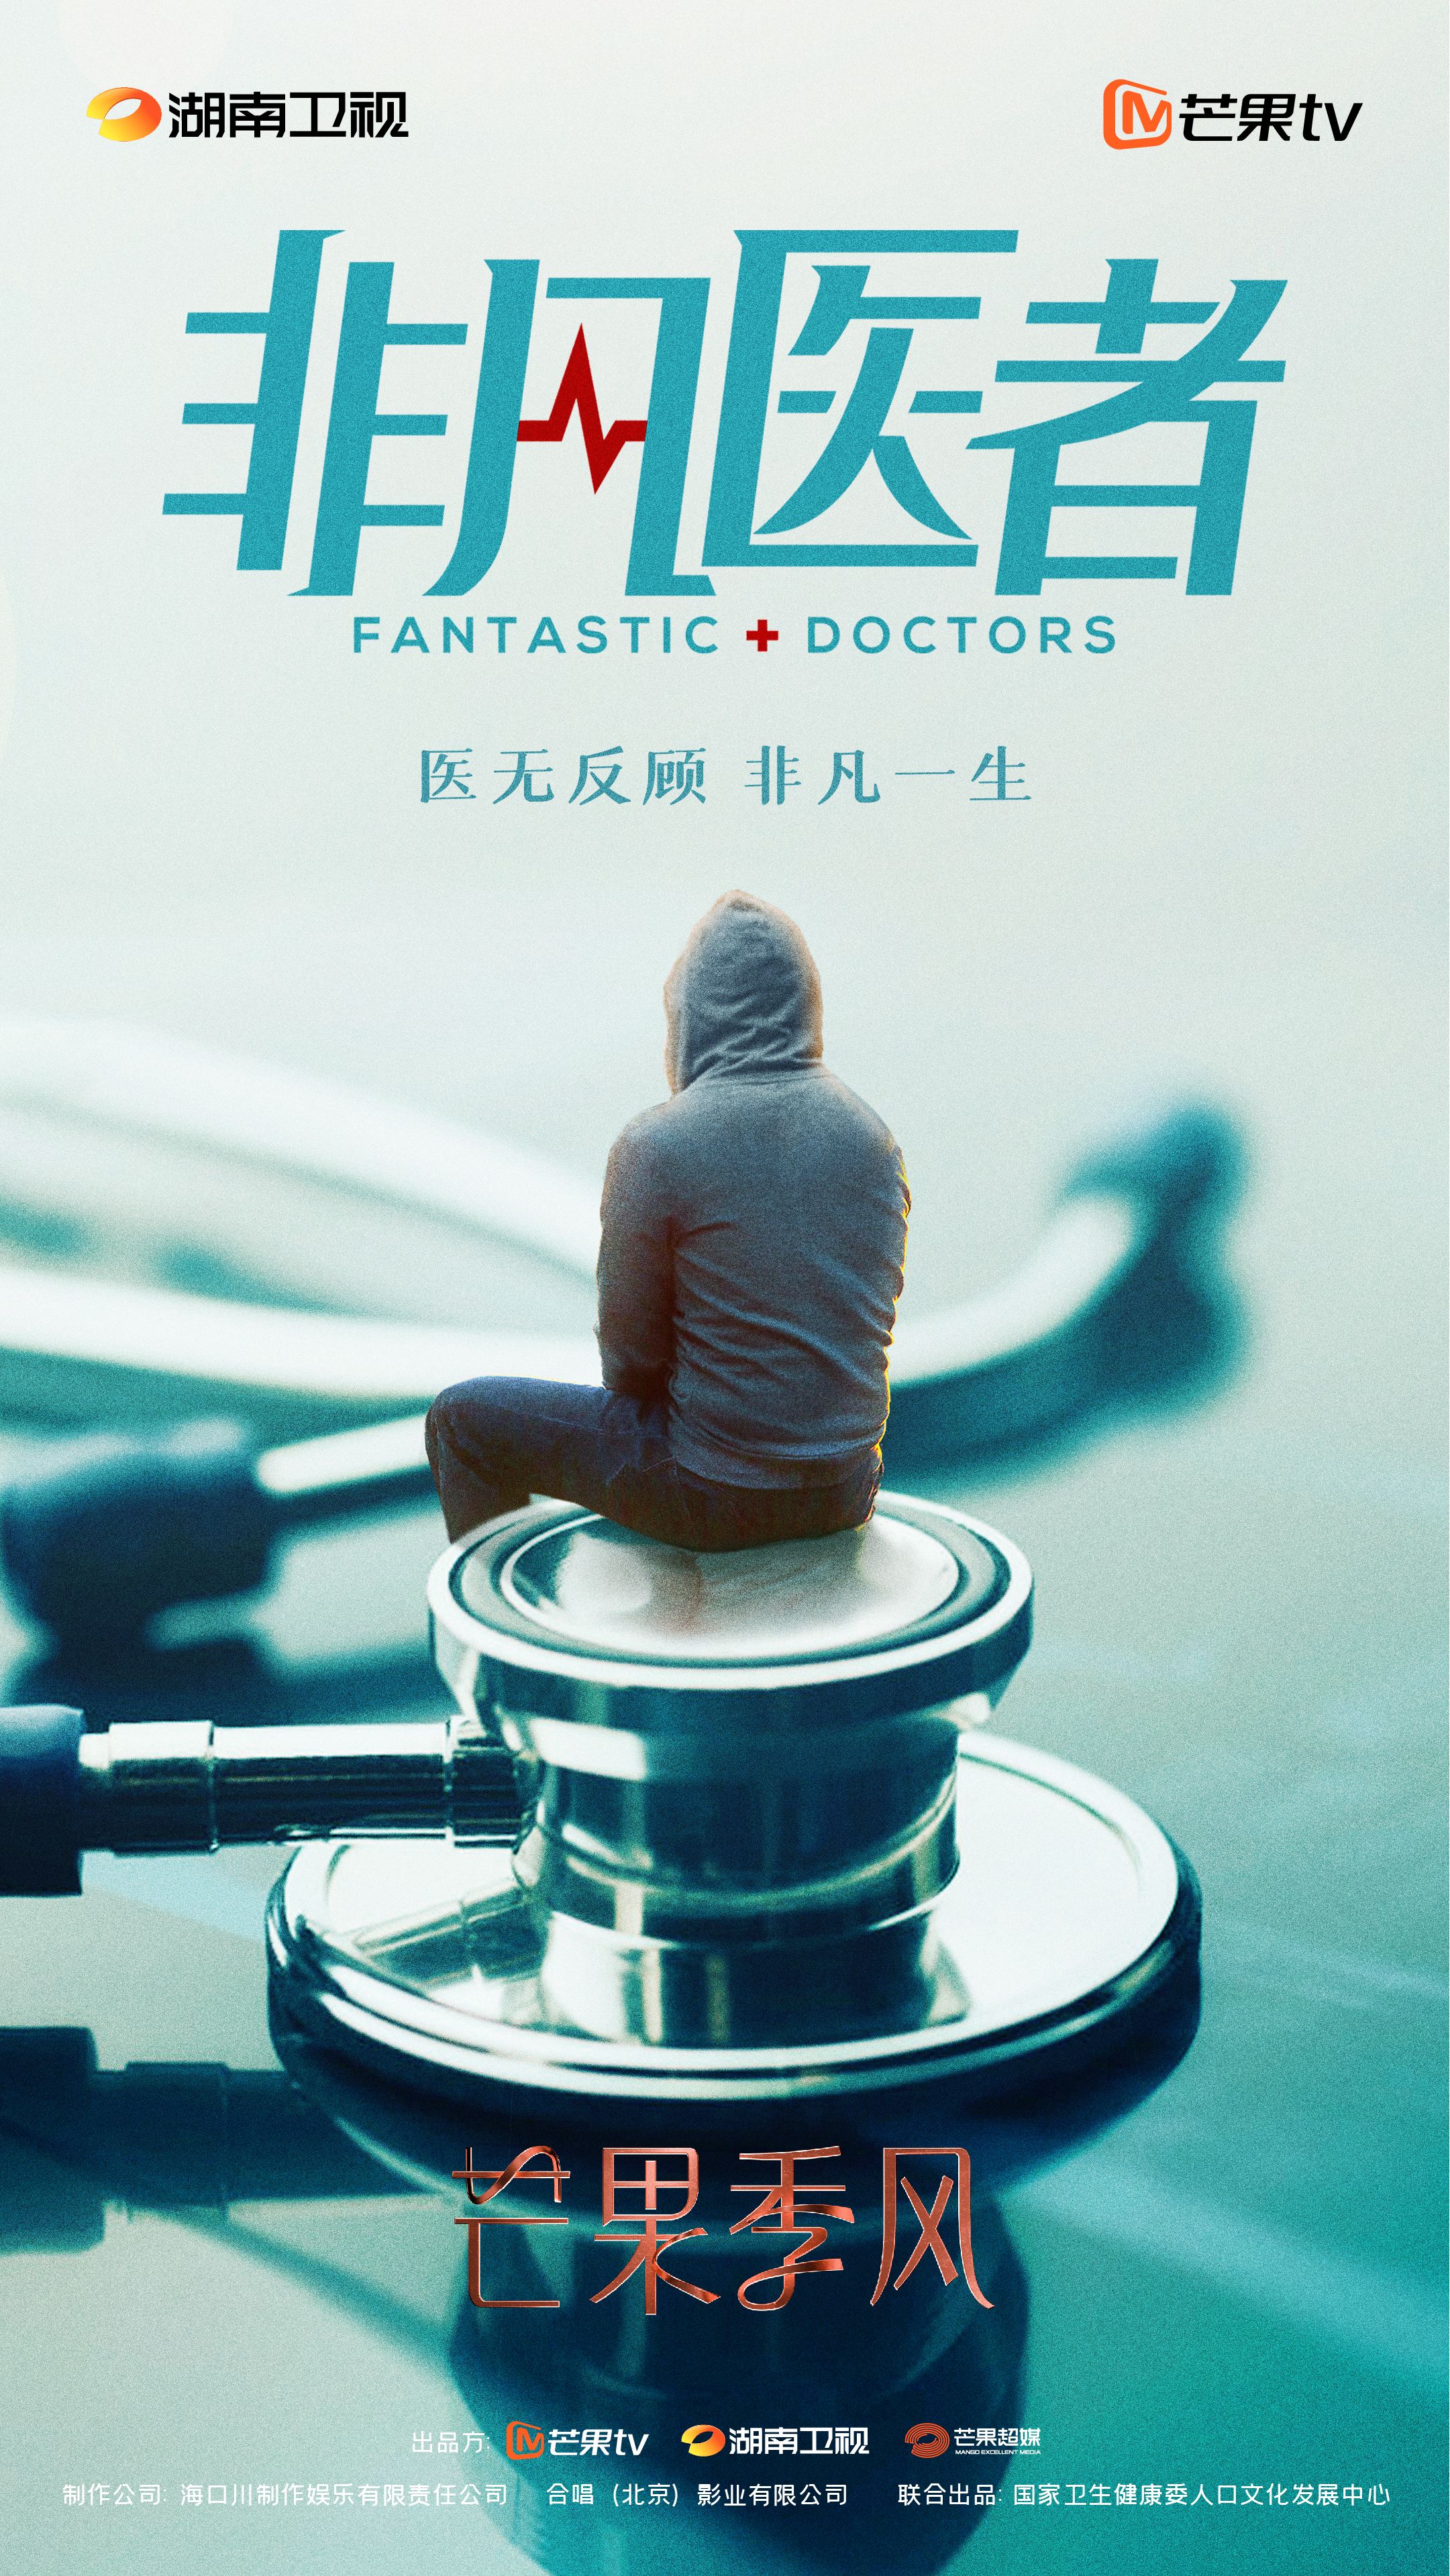 《非凡醫者》正式開機 張晚意領銜演繹“天才醫生”的超越與成長